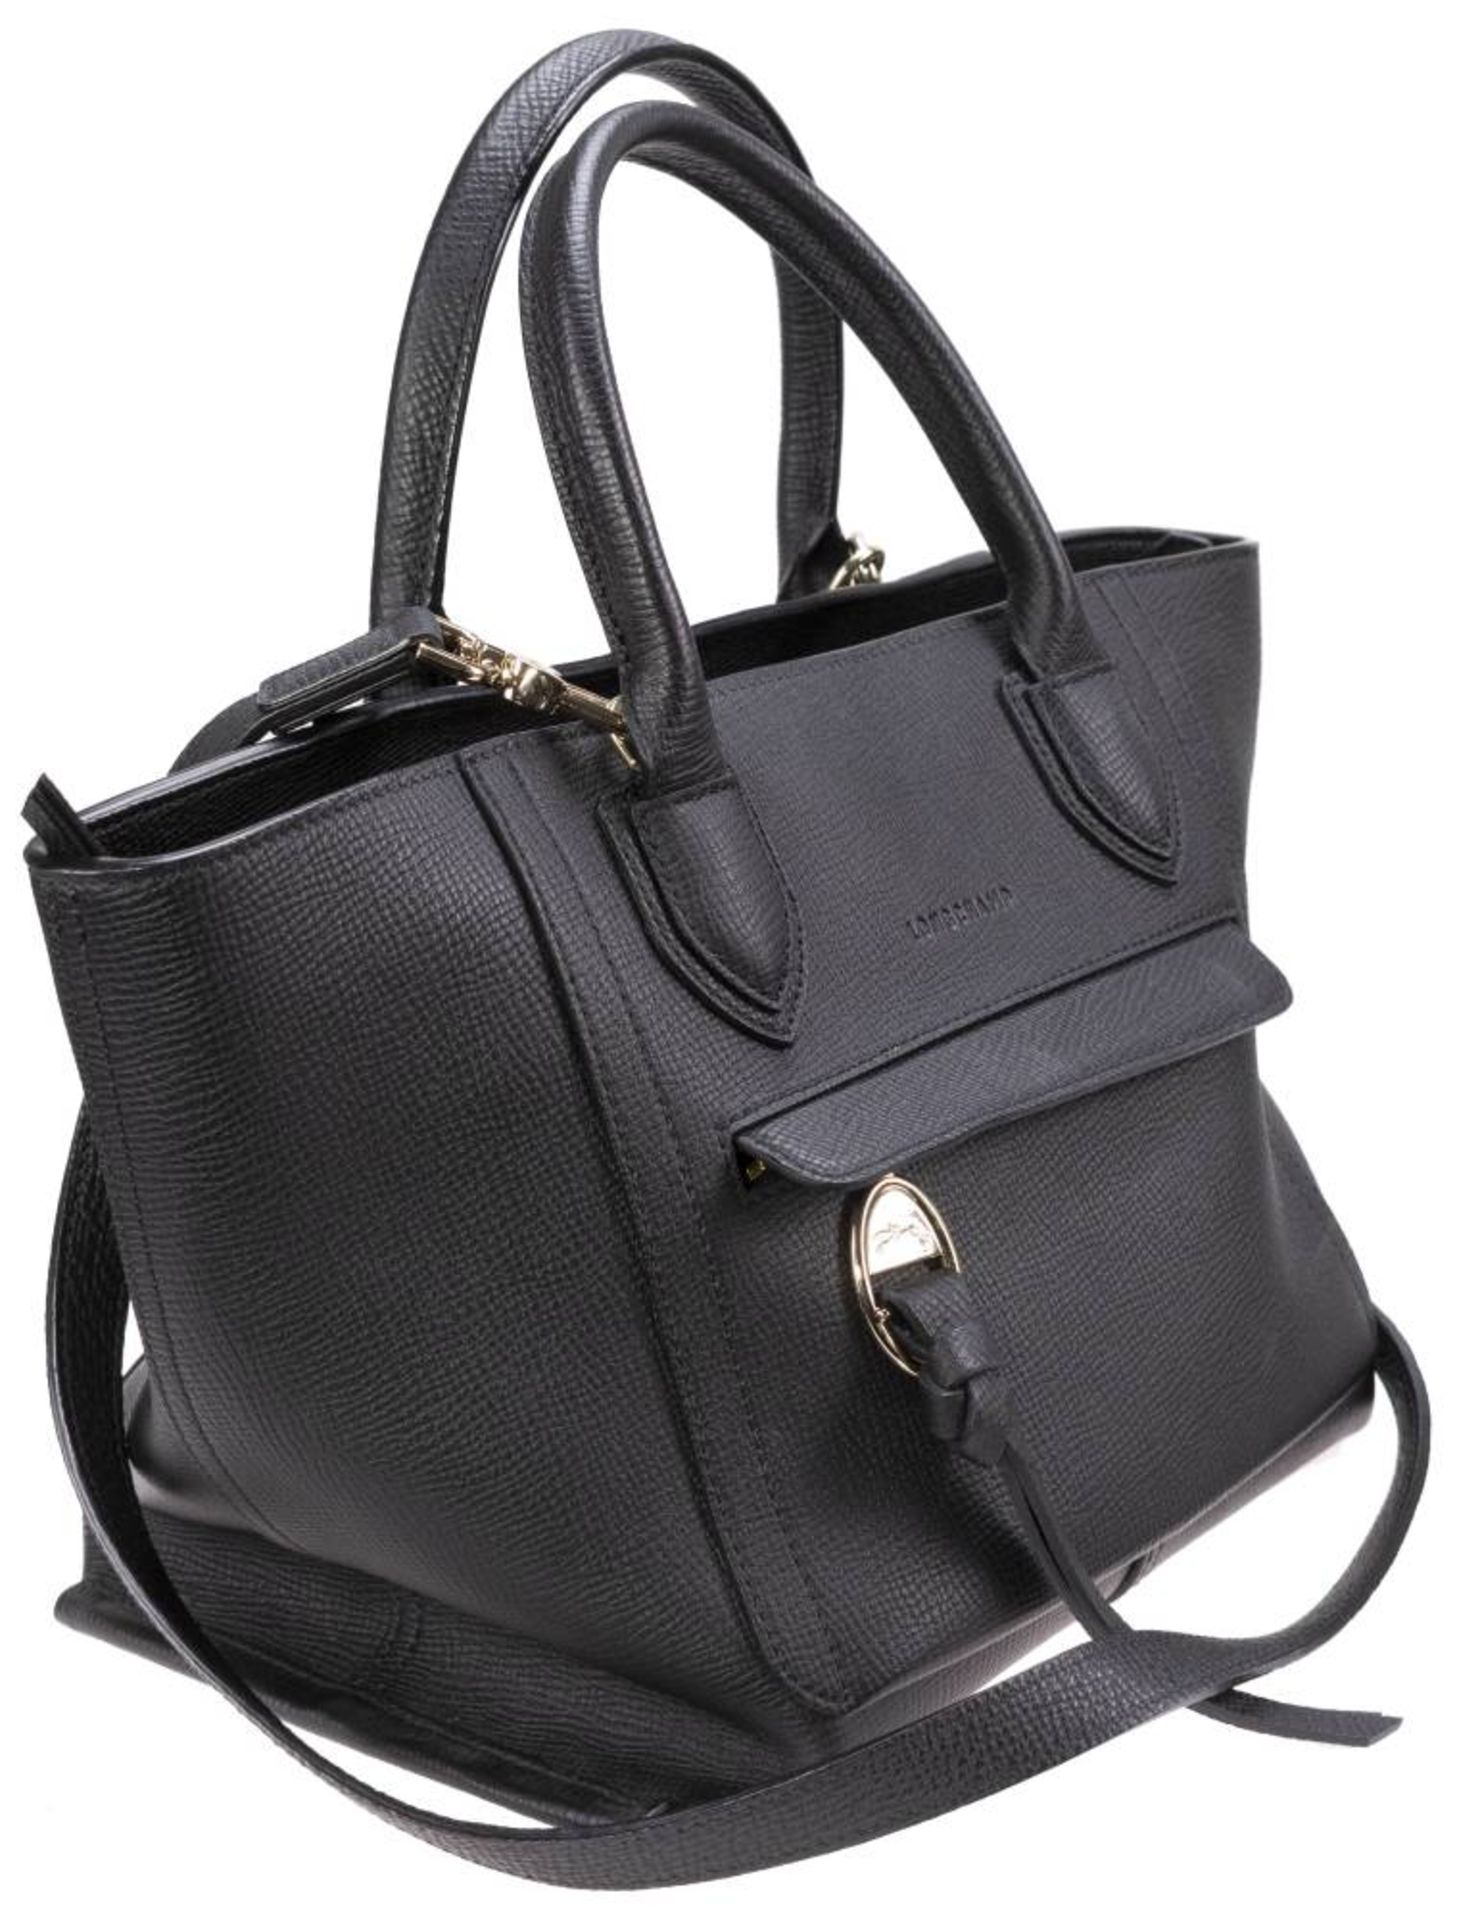 Longchamp Shopper, schwarzes Leder, goldfarbenes Metall, Außentasche mit Reißverschluss, innen - Bild 2 aus 6